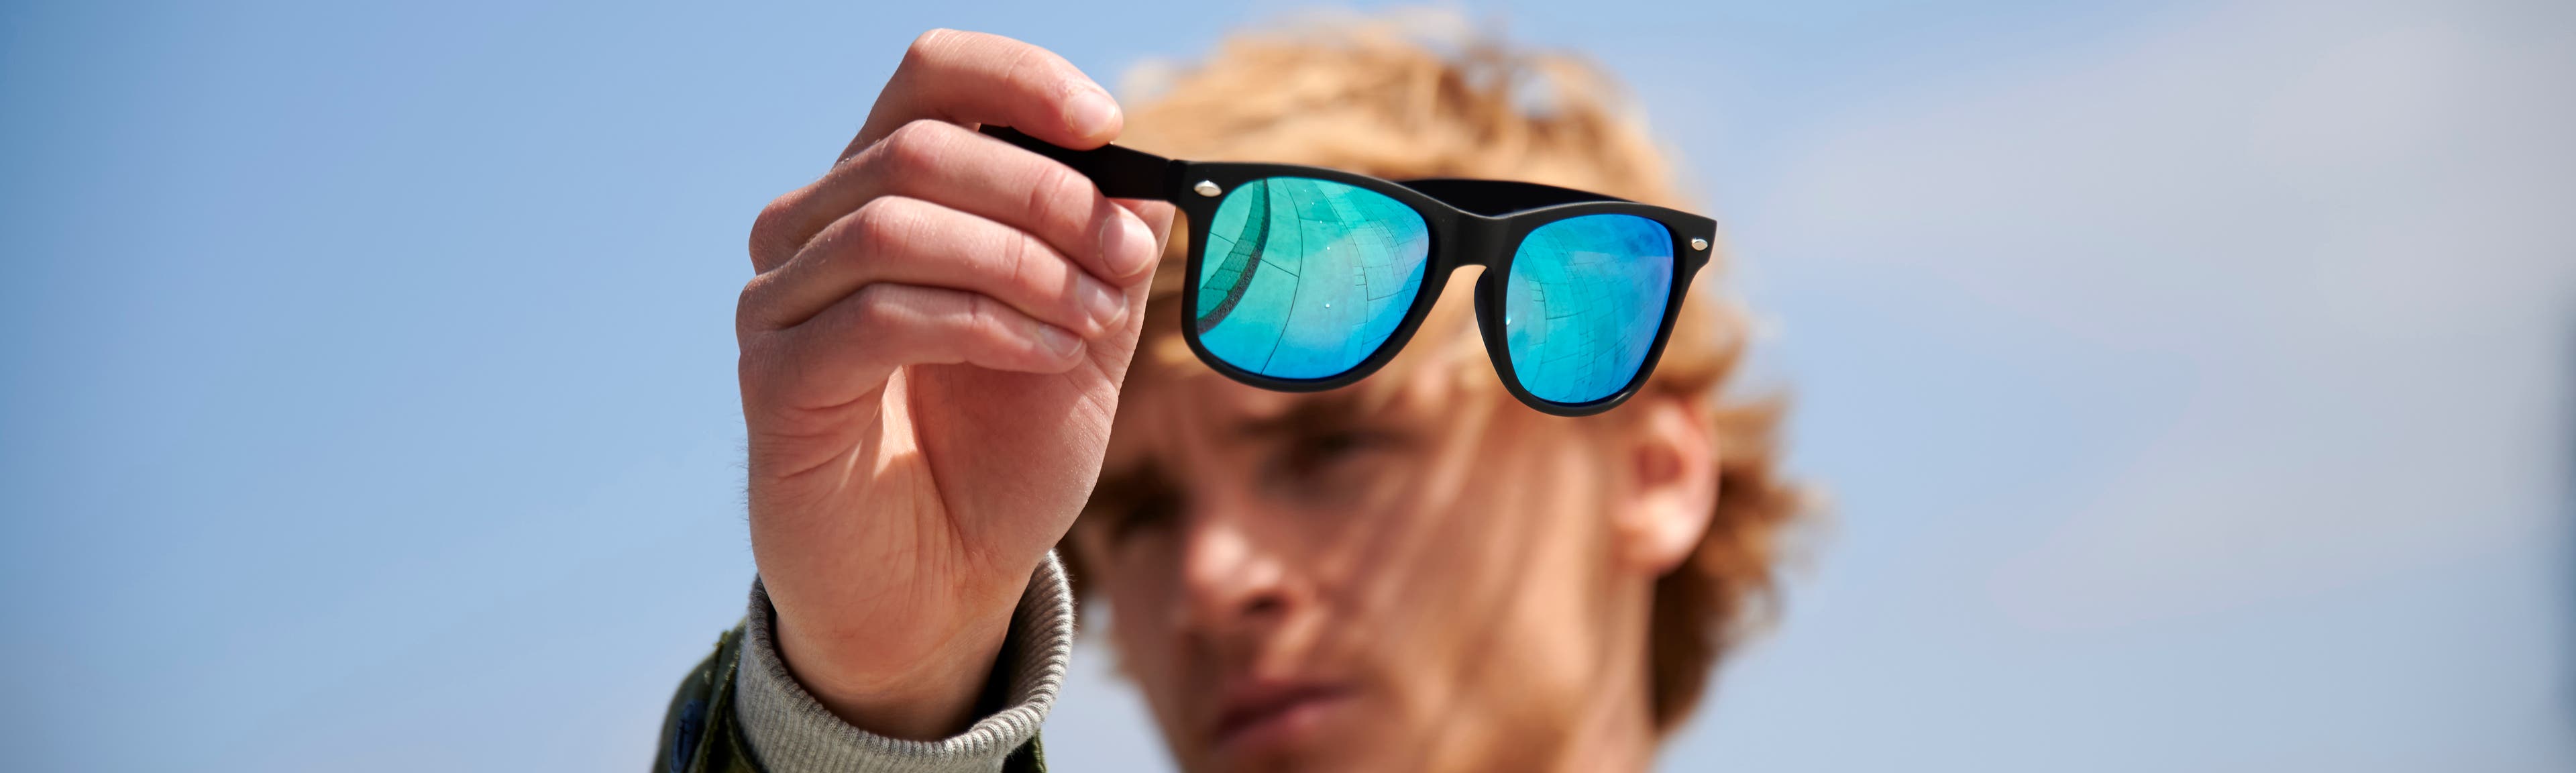 Solbriller – Beskyt dine øjne mod solen